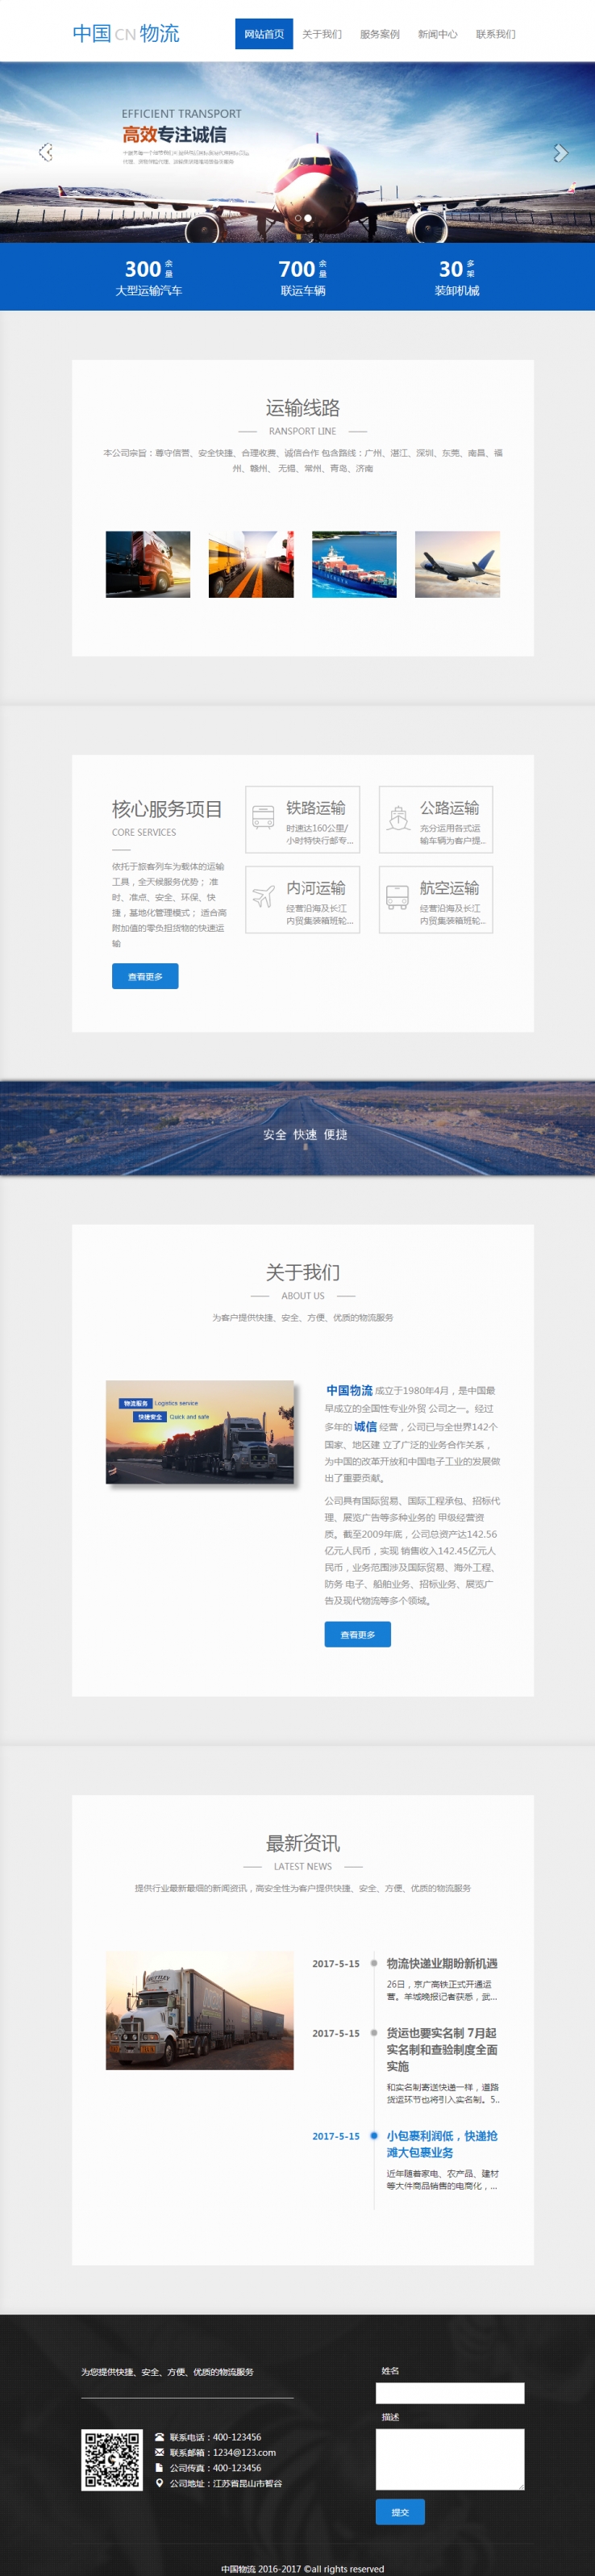 中国物流运输公司蓝色大气模板